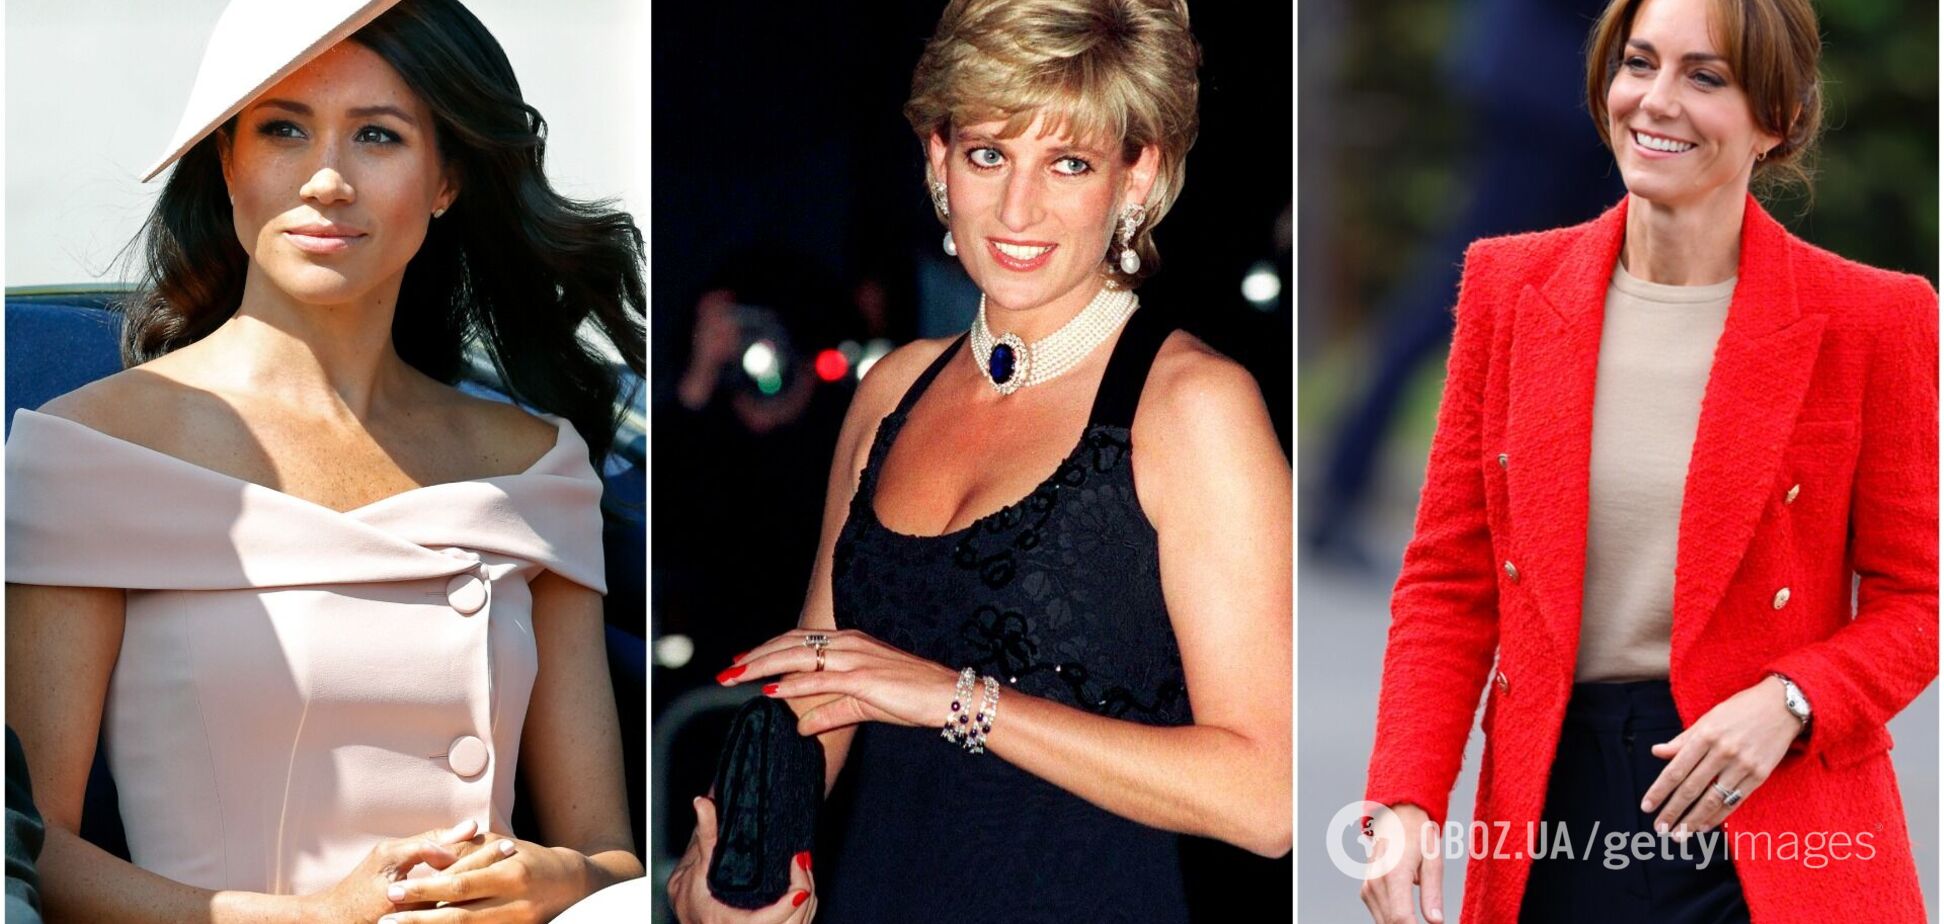 Який манікюр носять члени королівської сім’ї: принцеса Діана любила френч, а Кейт Міддлтон – шокувати публіку